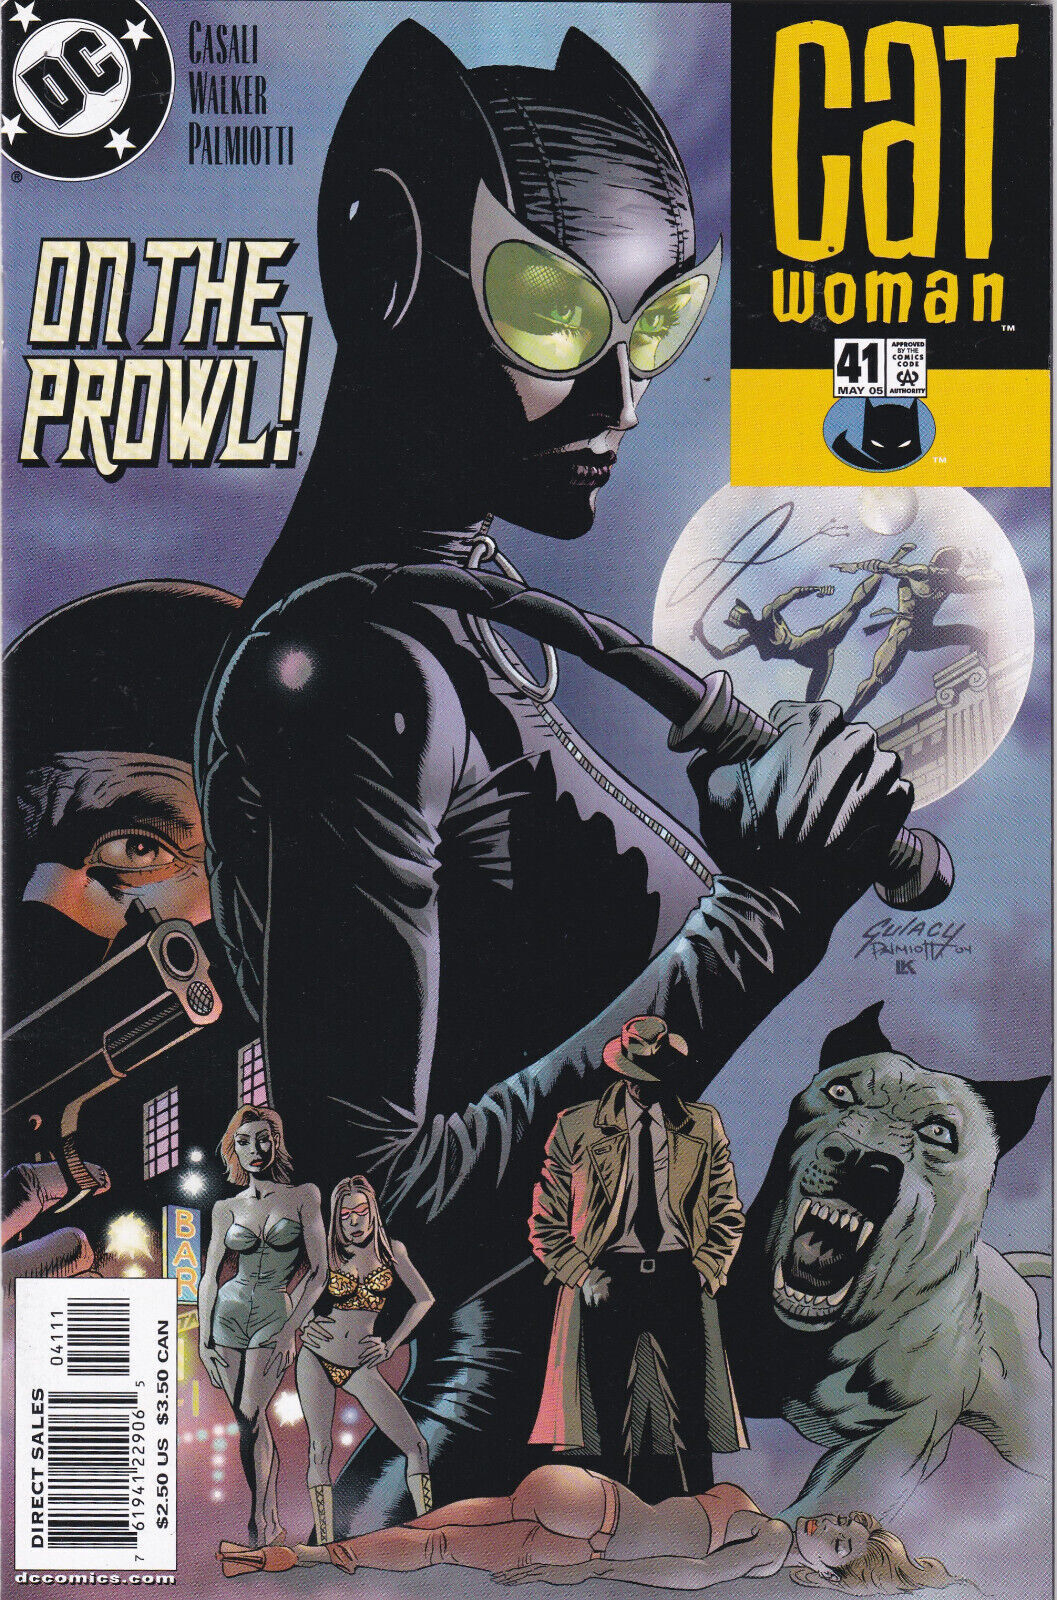 Catwoman #41, Vol.3(2002-2005) DC Comics, High Grade